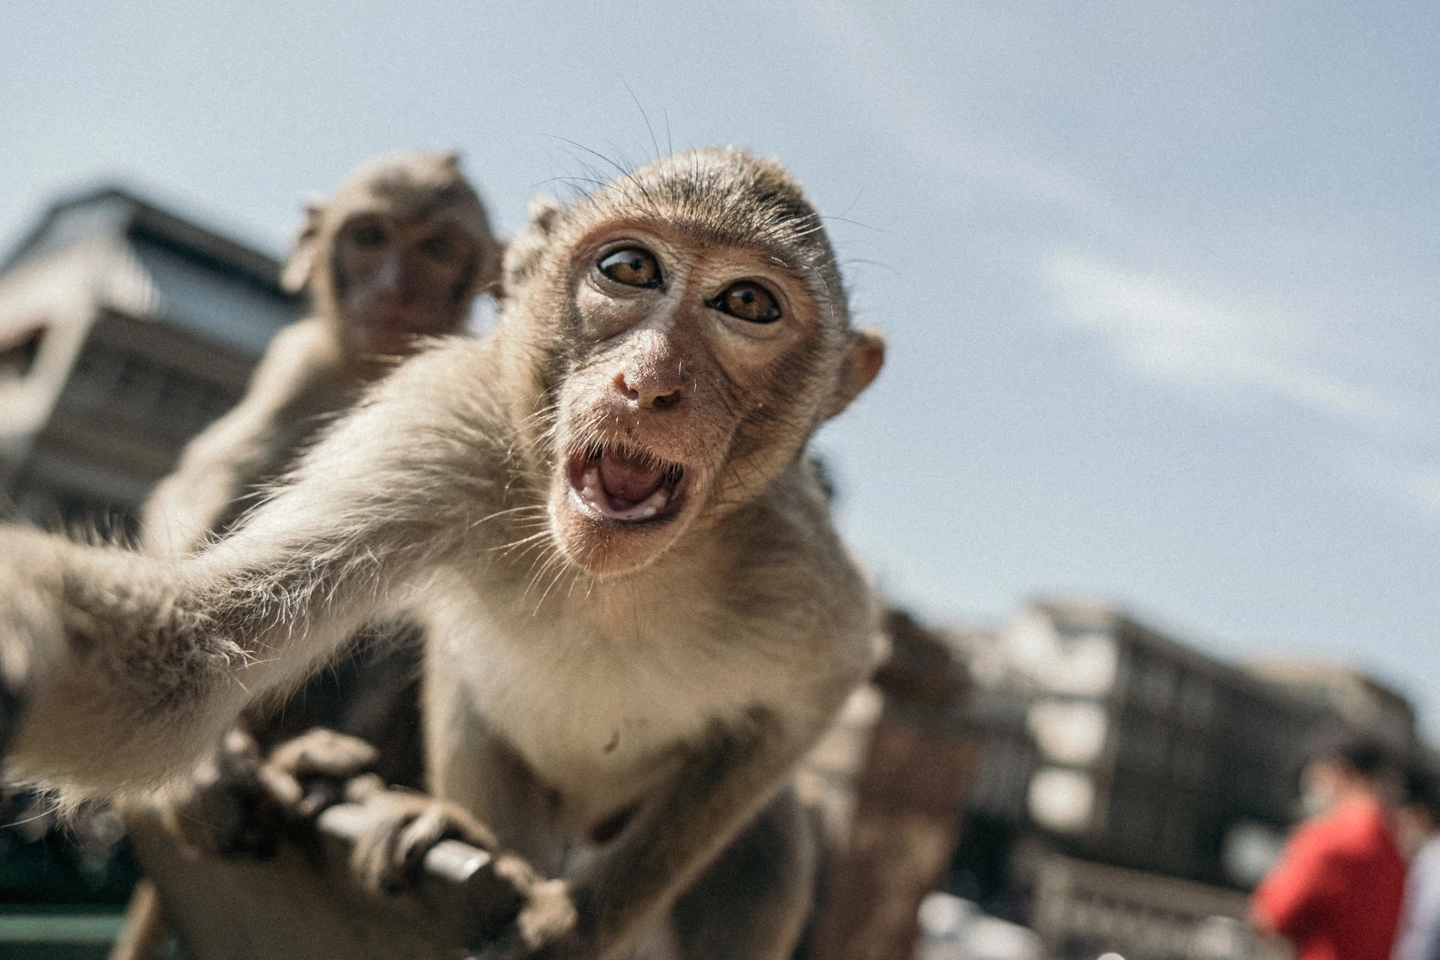 Vaiolo delle scimmie, la scienza s'interroga sul serbatoio del virus